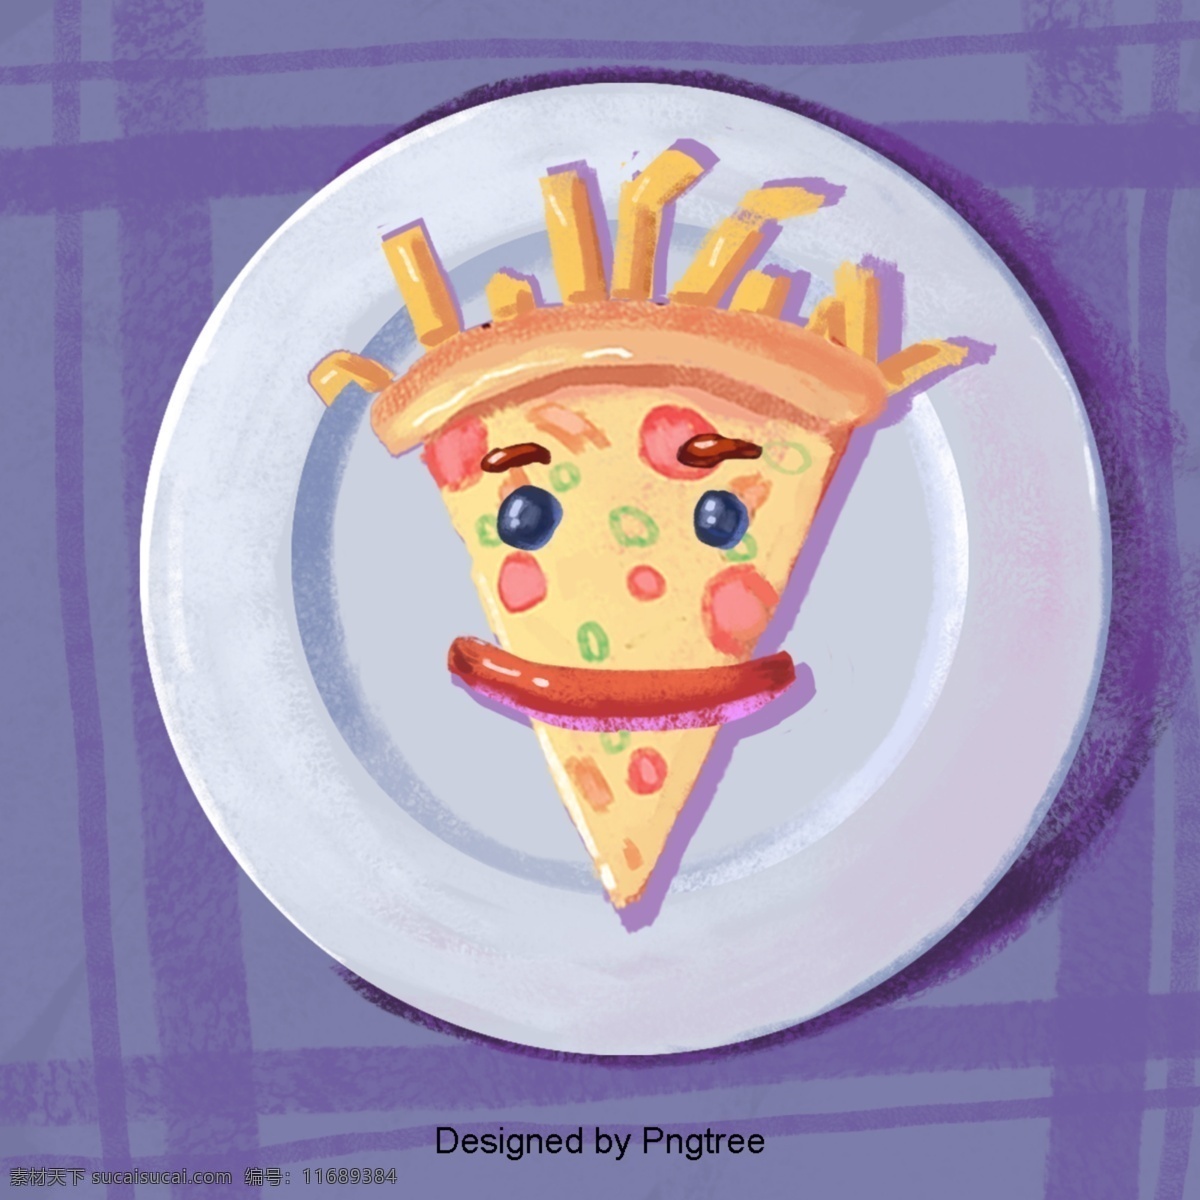 卡通 手绘 食品 艺术 极 简 主义 食物 图标 可爱 绘画 装饰 时尚 元素